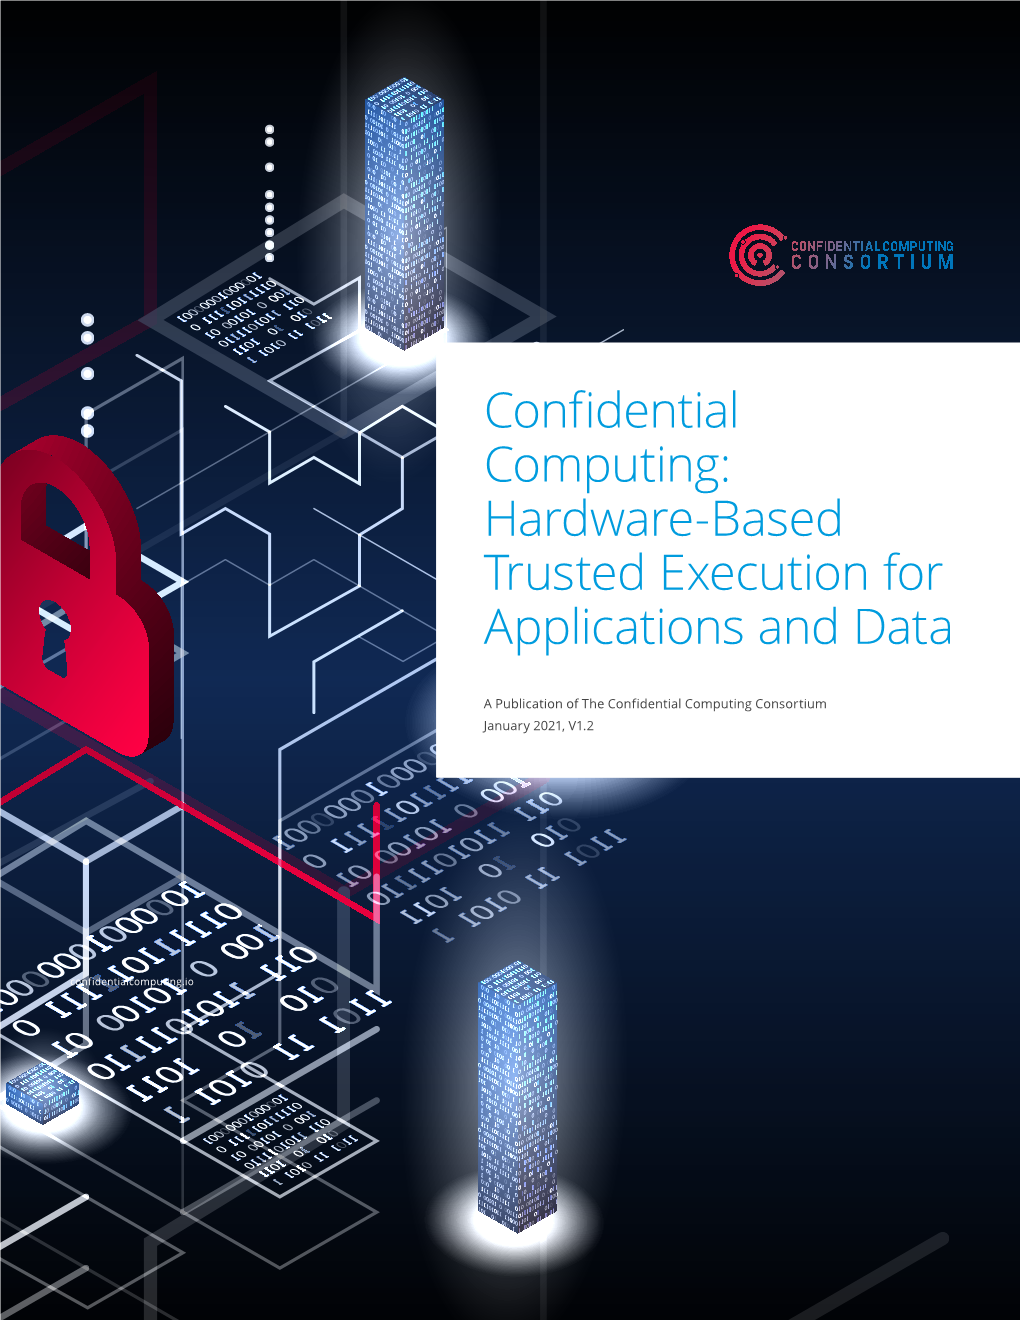 Confidential Computing Consortium January 2021, V1.2